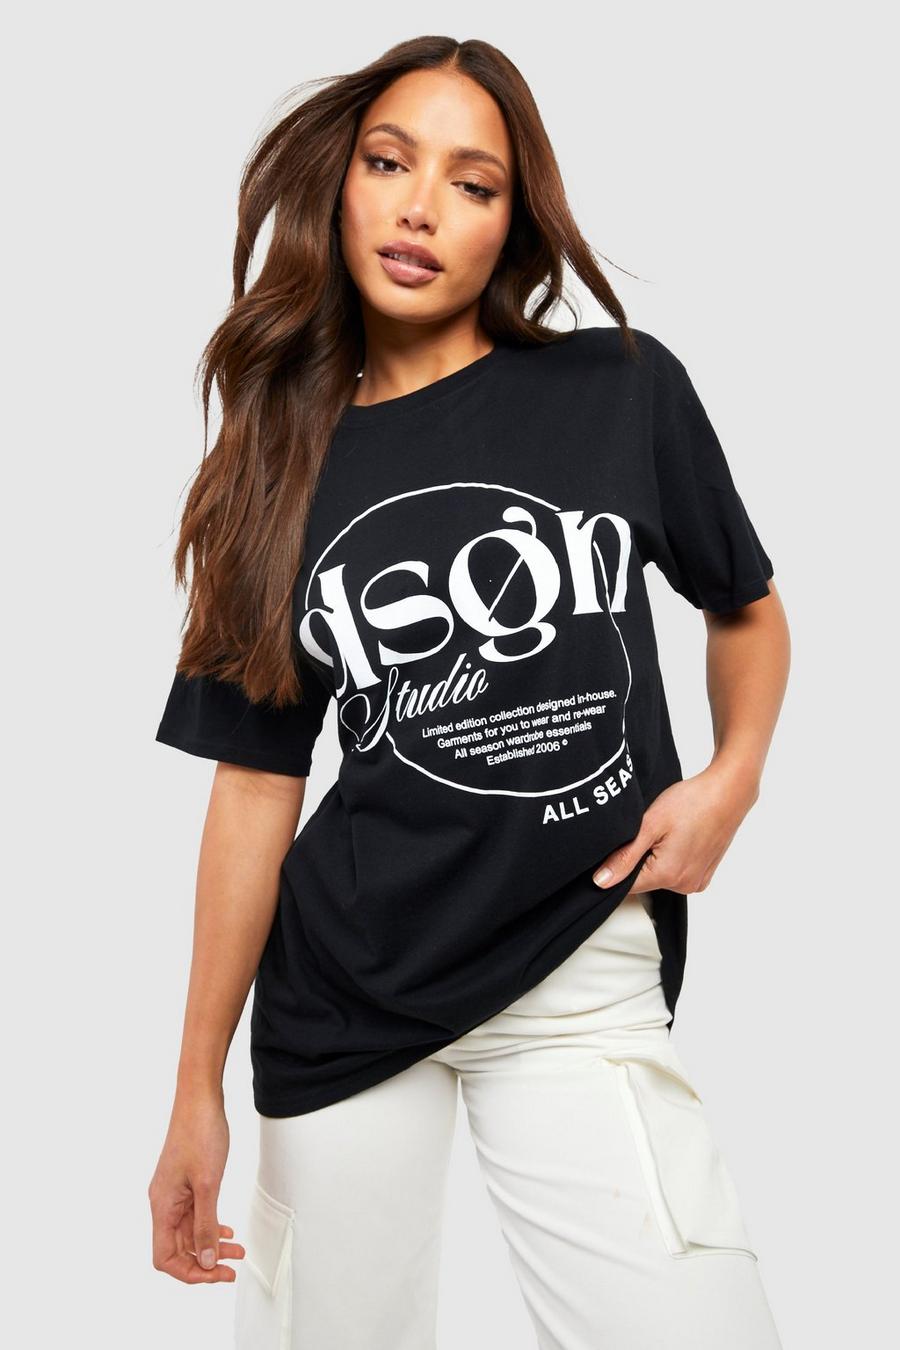 T-shirt Tall con stampa Dsgn Studio, Black nero